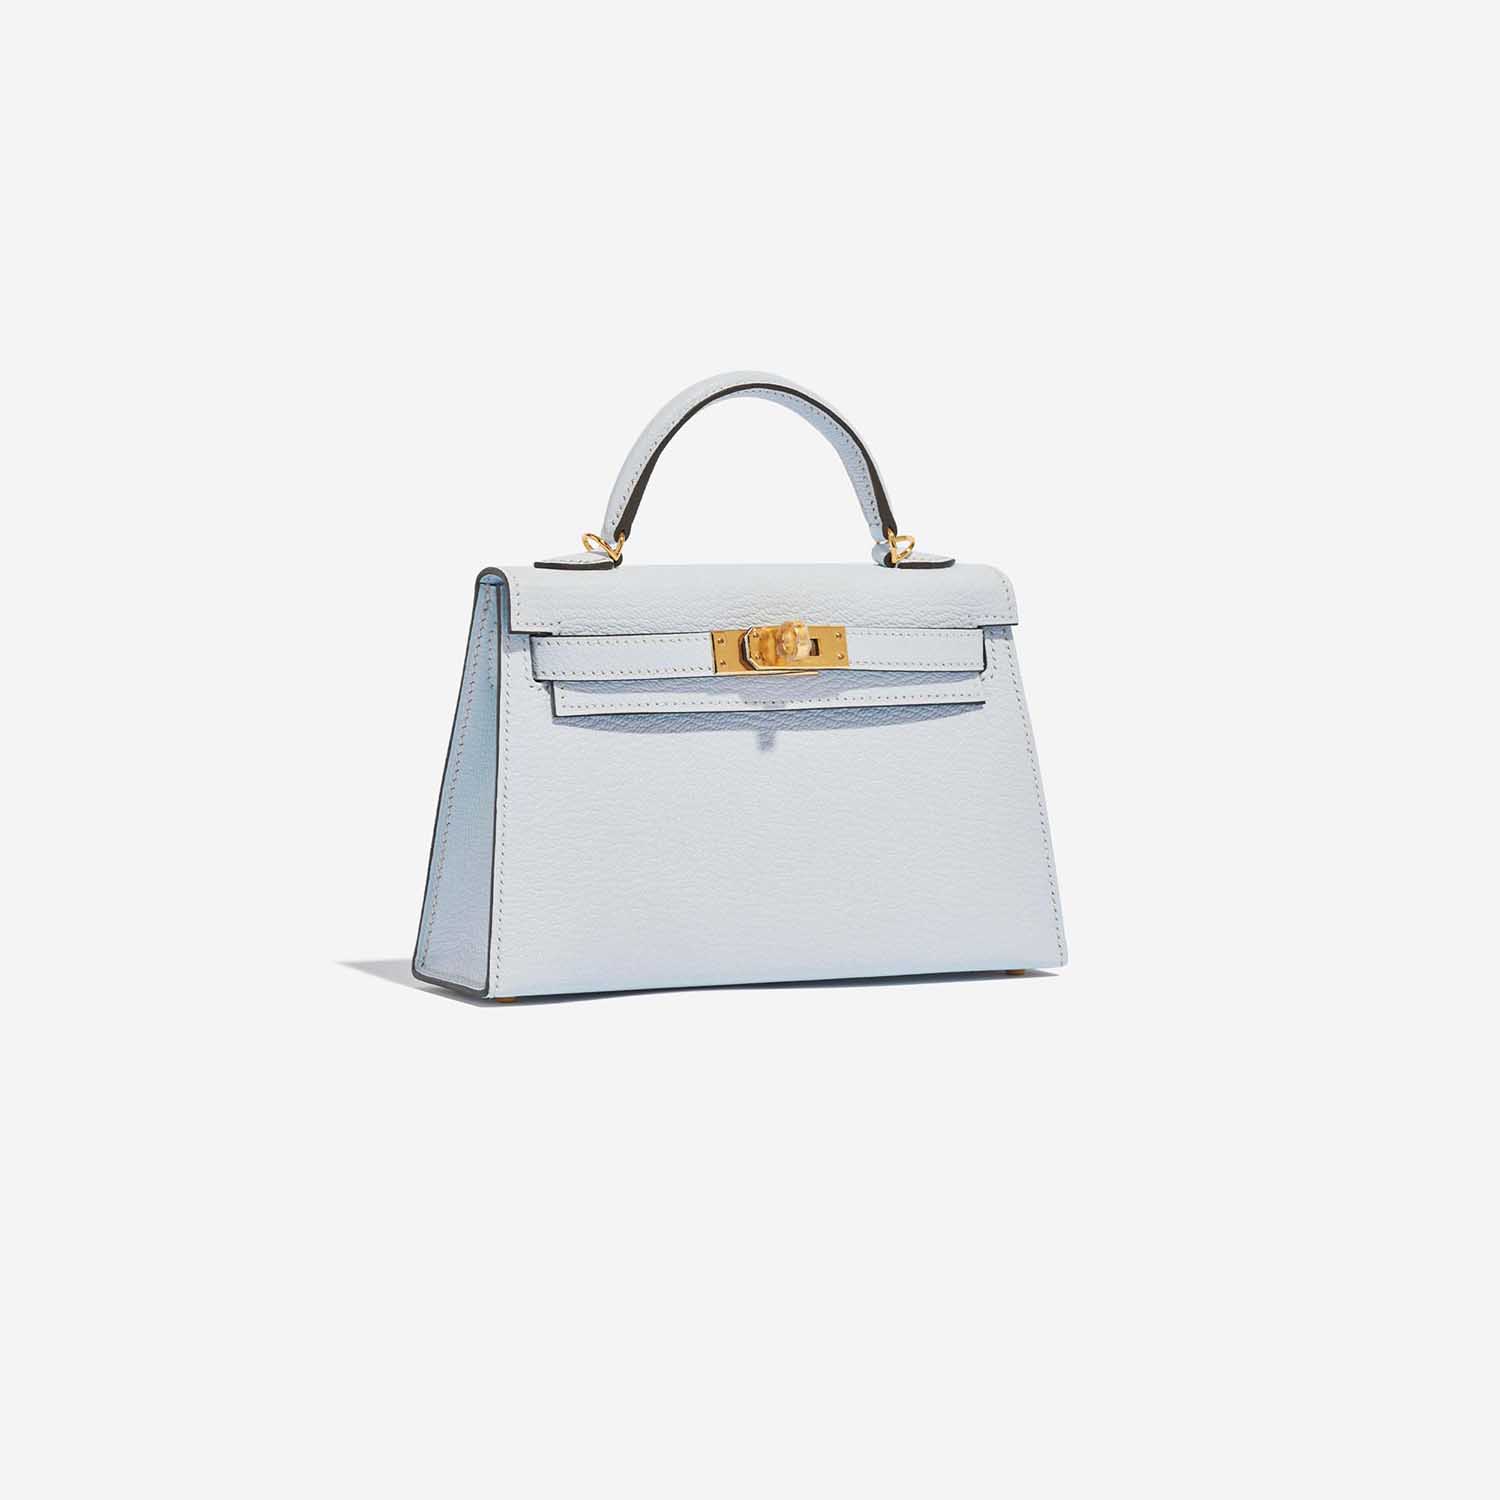 Hermès Kelly Mini BleuBrume Side Front | Verkaufen Sie Ihre Designer-Tasche auf Saclab.com